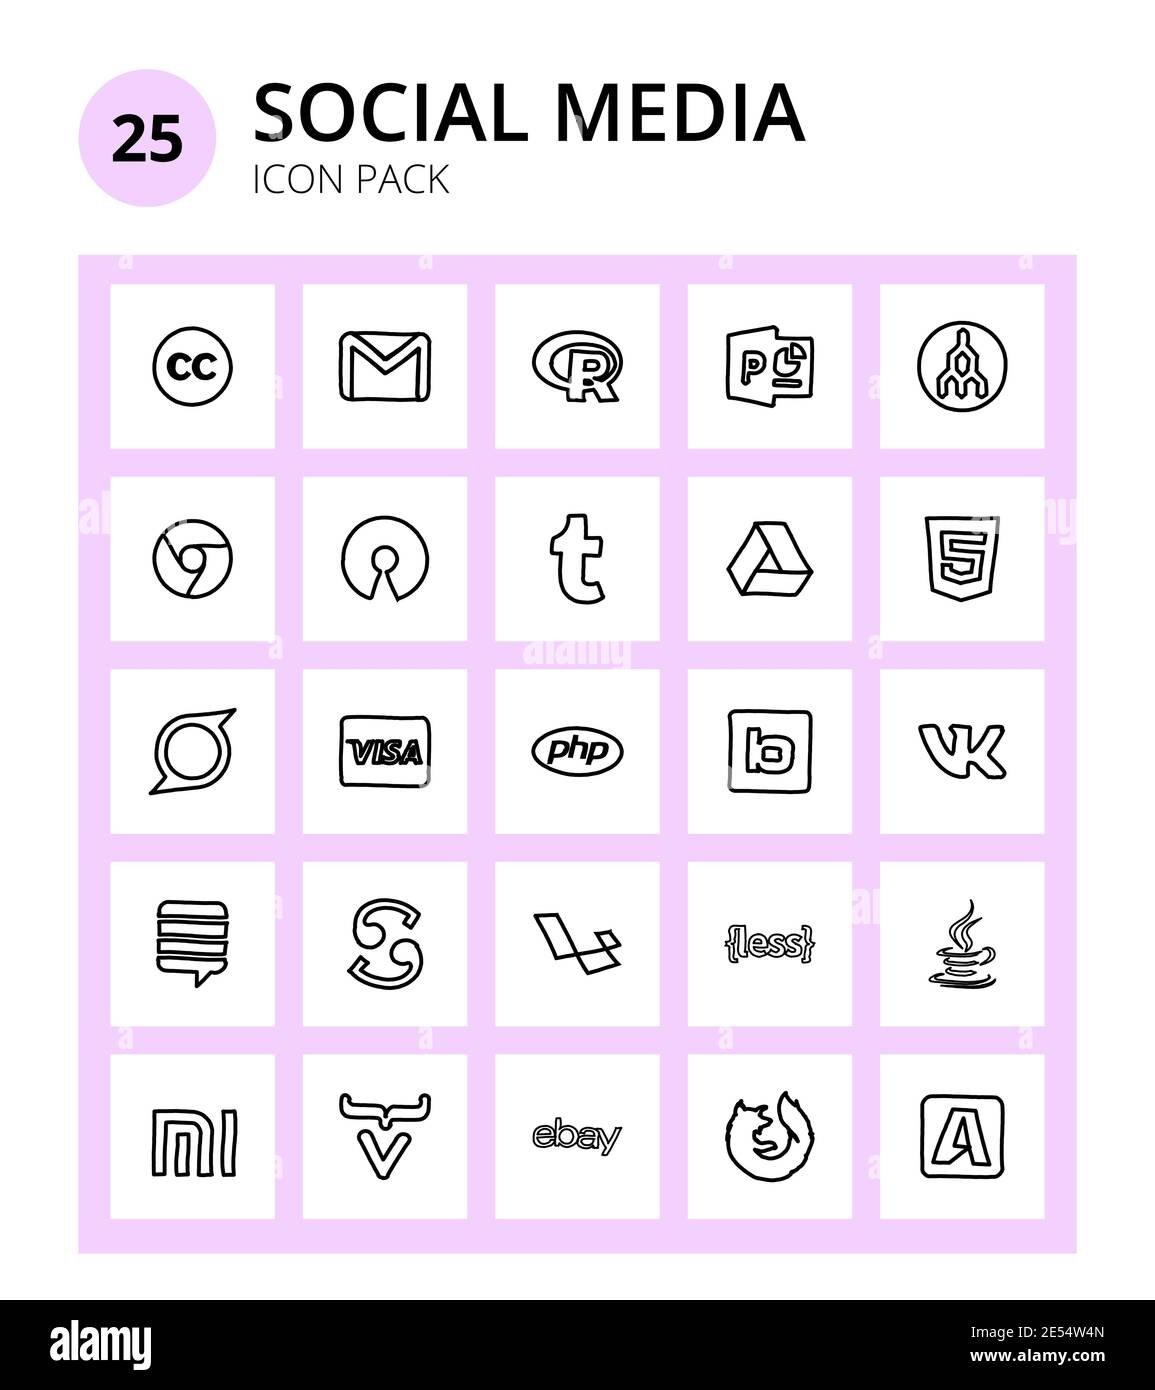 25 signes sociaux et symboles bimobject, carte de crédit, osi, visa, html éléments de conception vectorielle modifiables Illustration de Vecteur